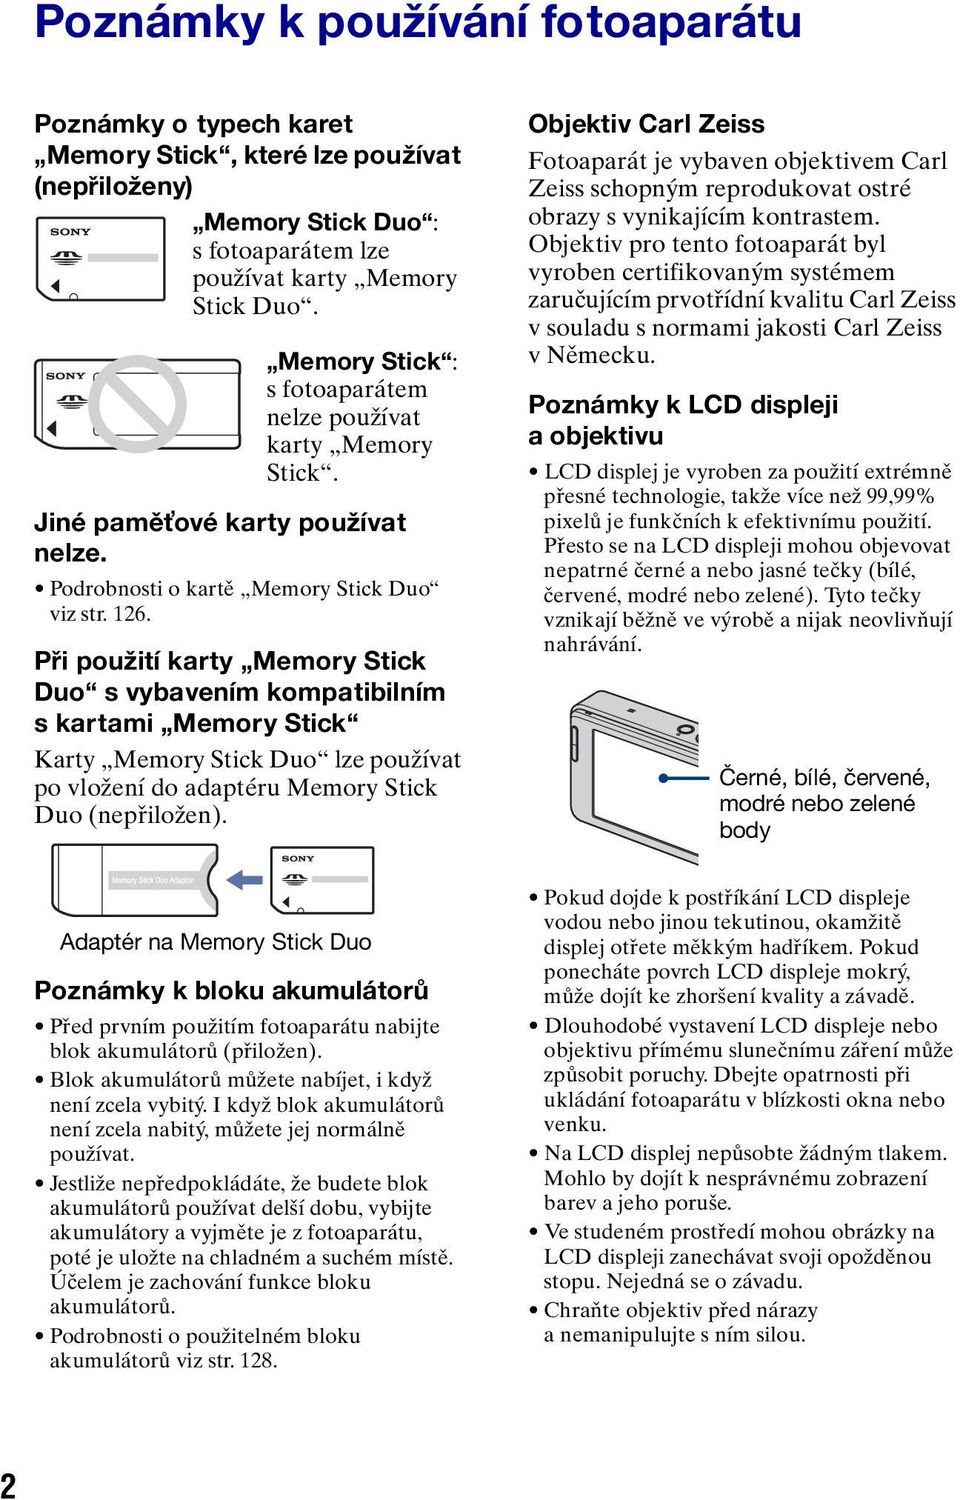 Při použití karty Memory Stick Duo s vybavením kompatibilním skartami Memory Stick Karty Memory Stick Duo lze používat po vložení do adaptéru Memory Stick Duo (nepřiložen).